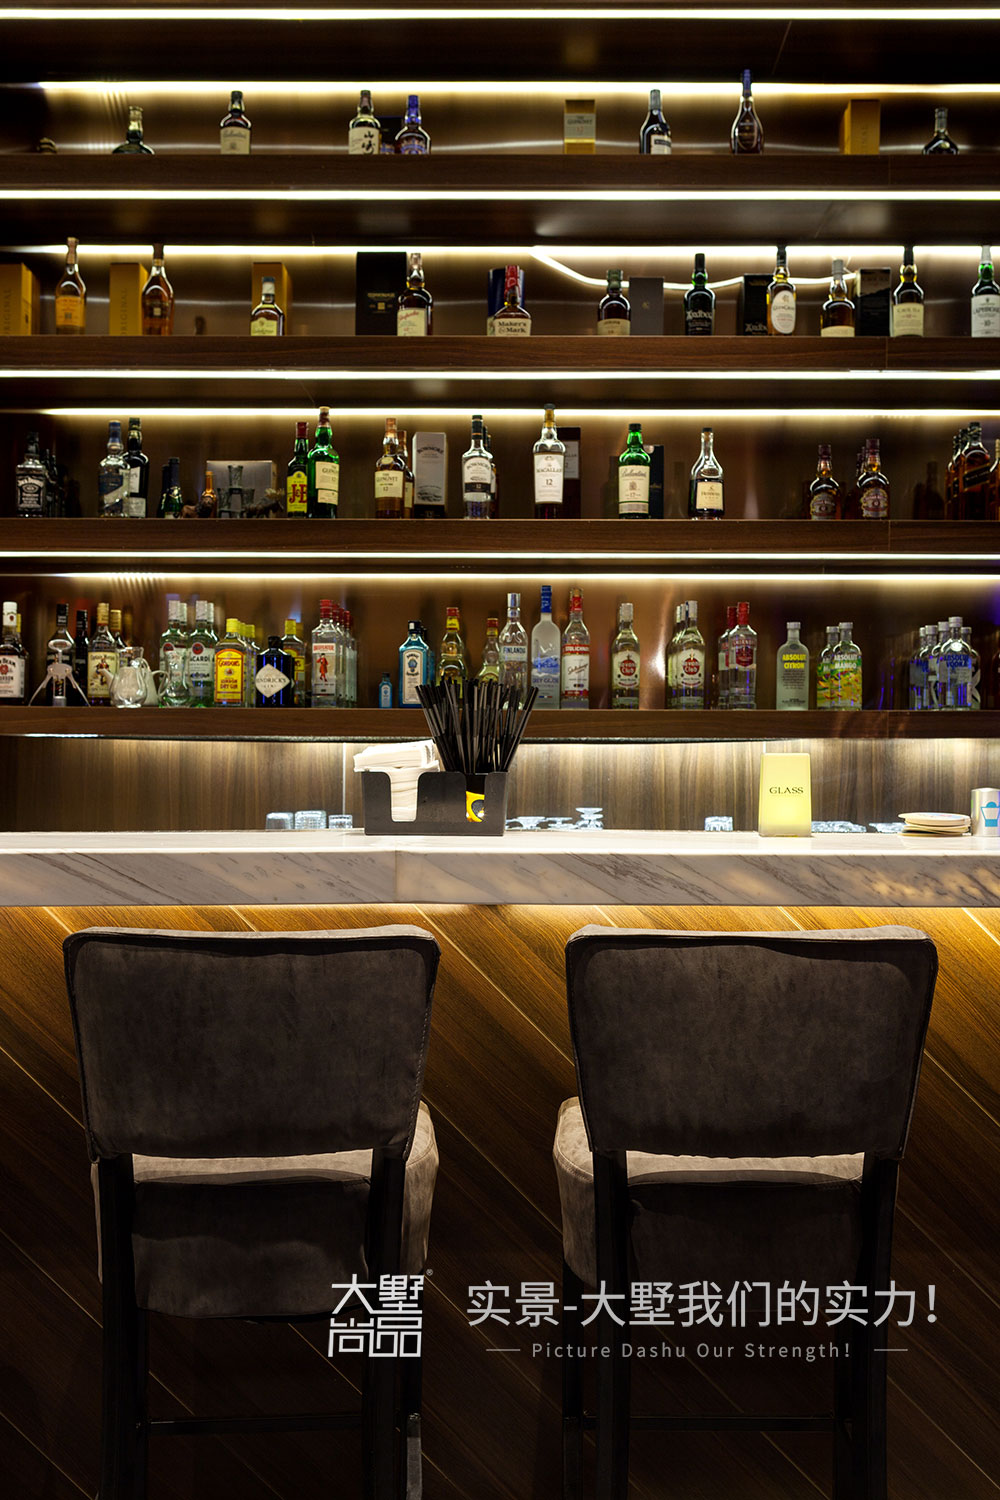 半弧形的吧台一目了然,内嵌式酒柜有着丰富多样的藏酒,让来酒吧消费的